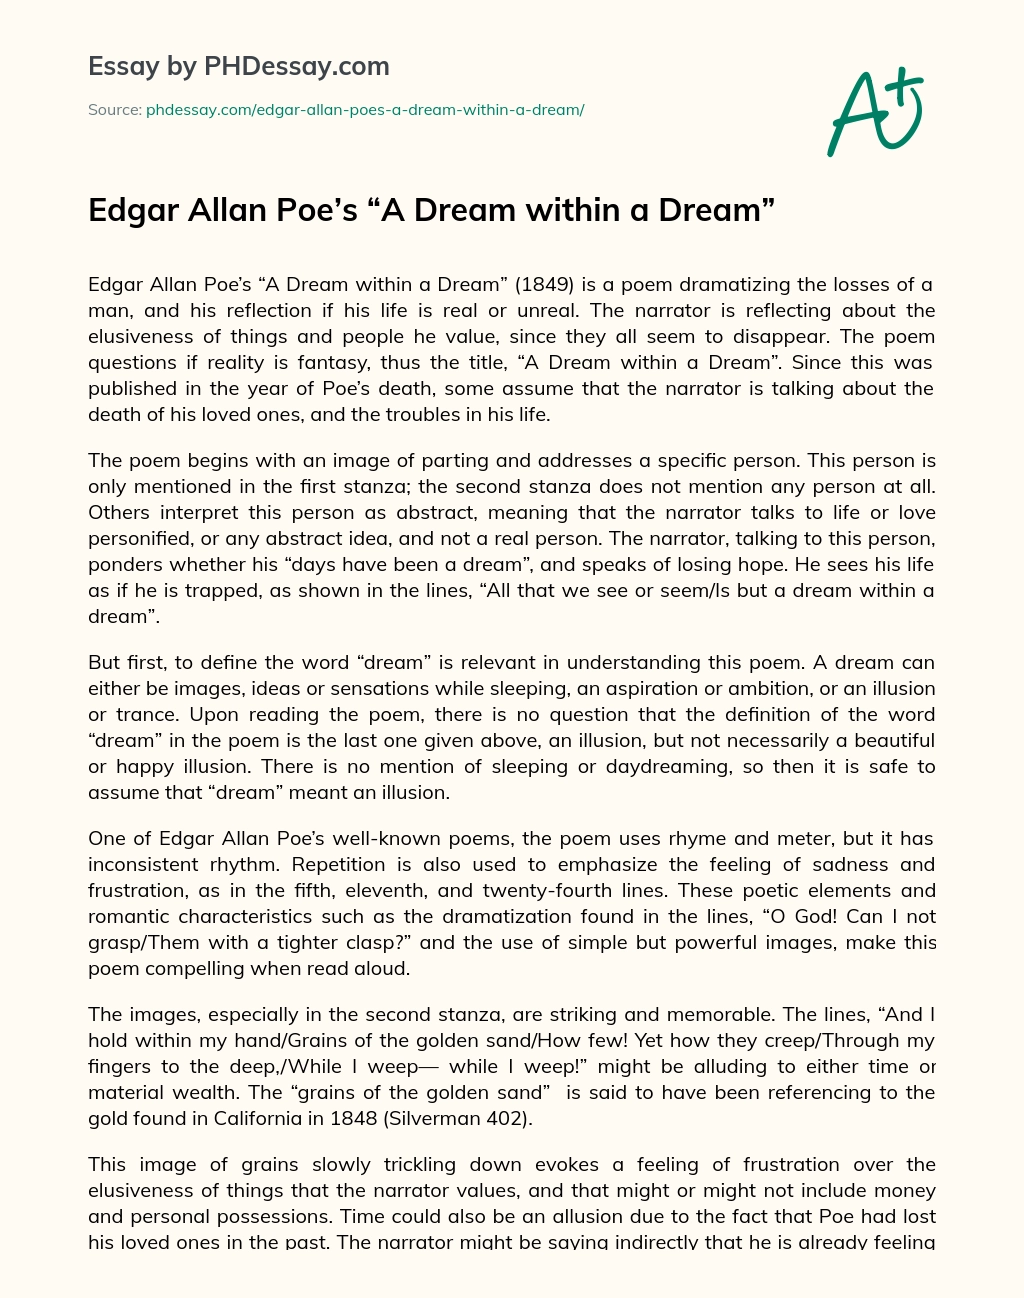 Edgar Allan Poe’s “A Dream within a Dream” essay